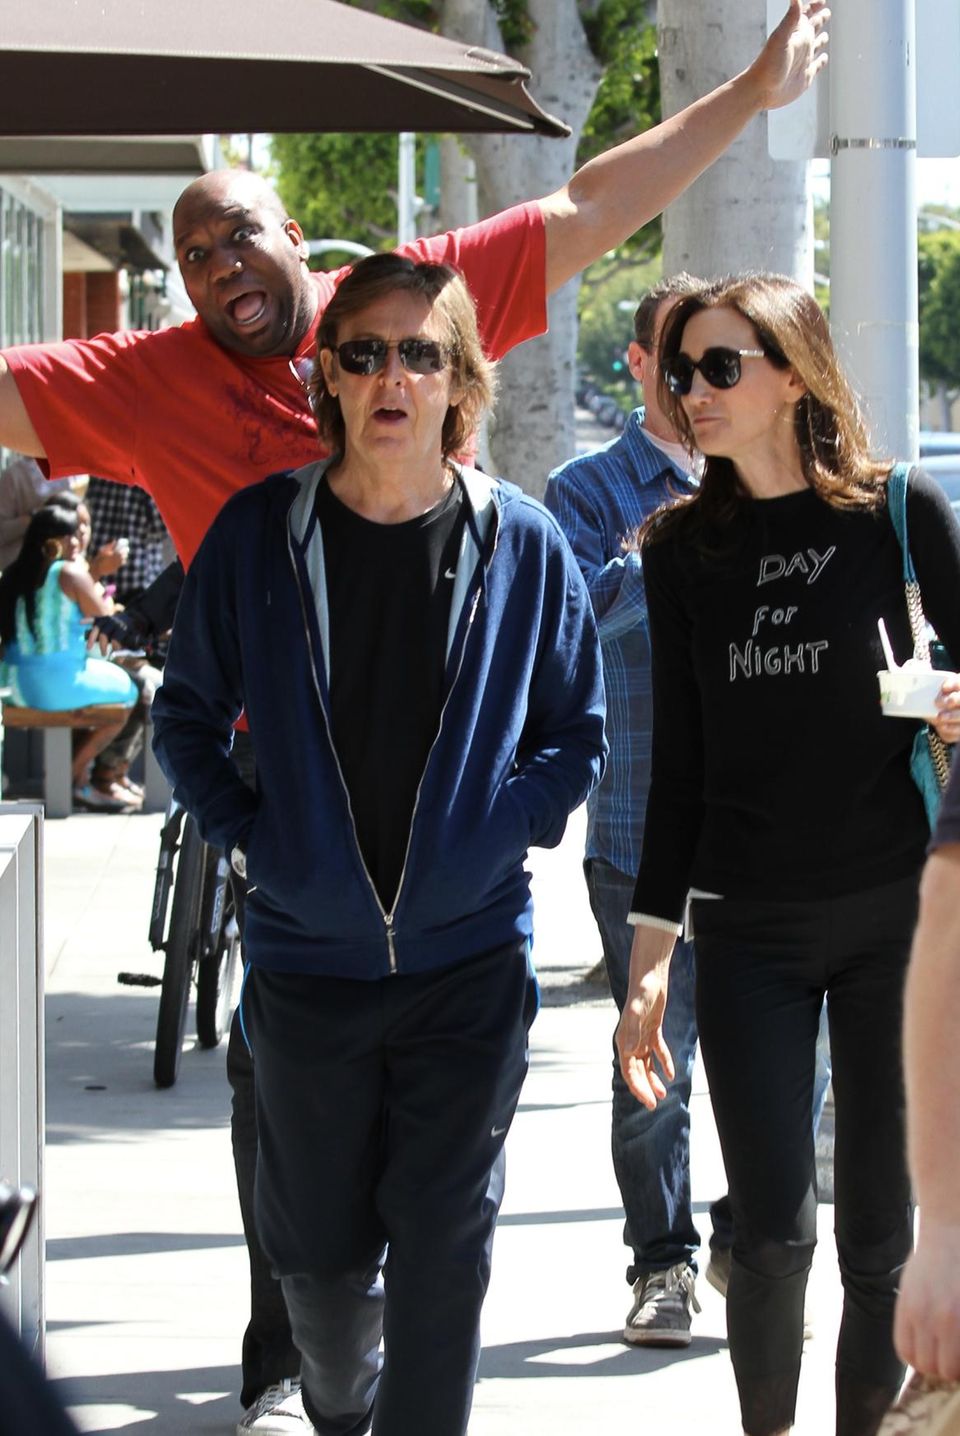 Als Paul McCartney mit seiner Frau Nancy Shevell in Beverly Hills spazieren geht, wirft sich ein Fotograf ins Bild.